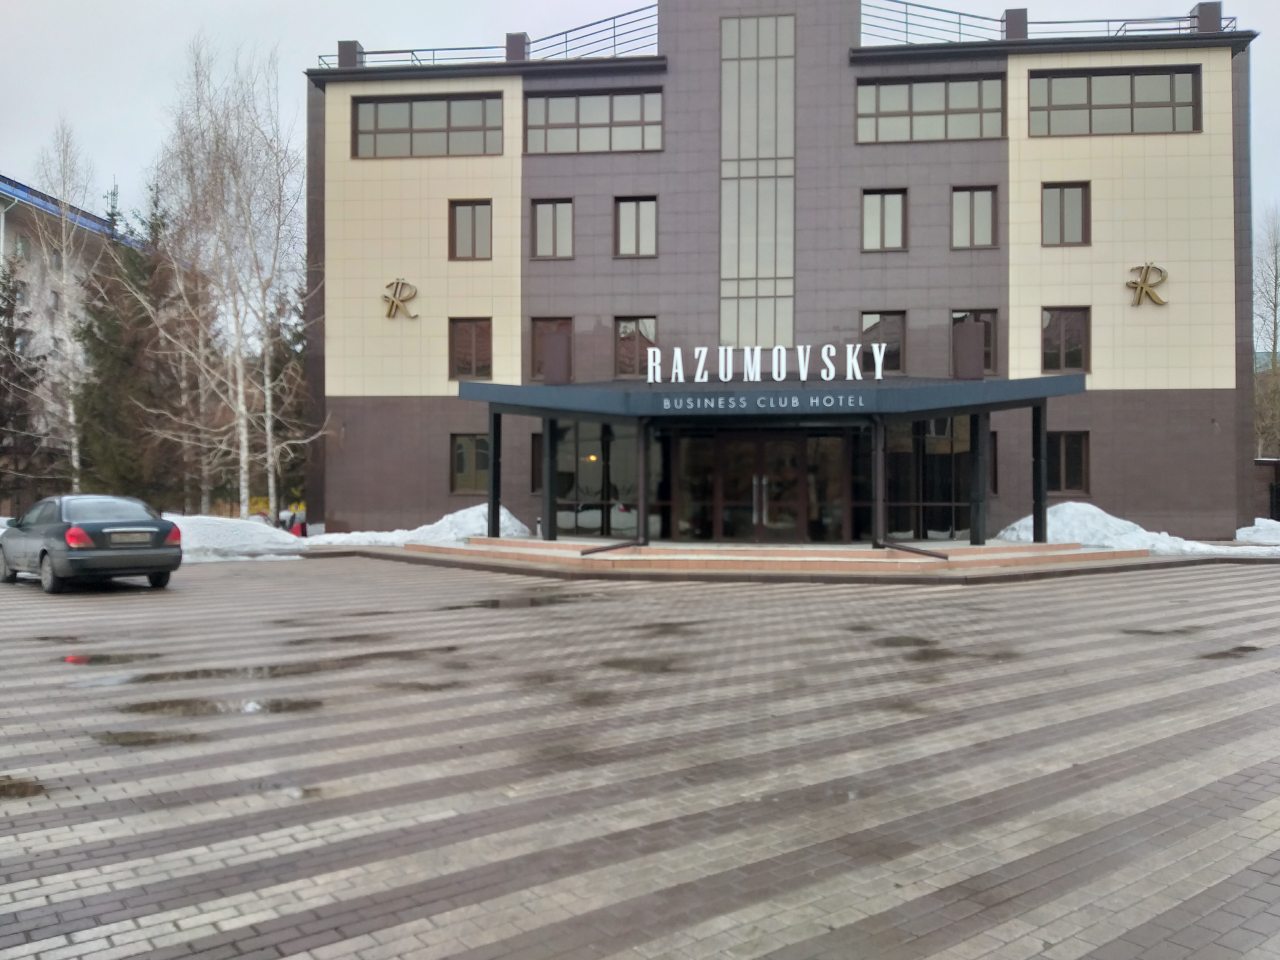 Парковка, Отель Разумовский